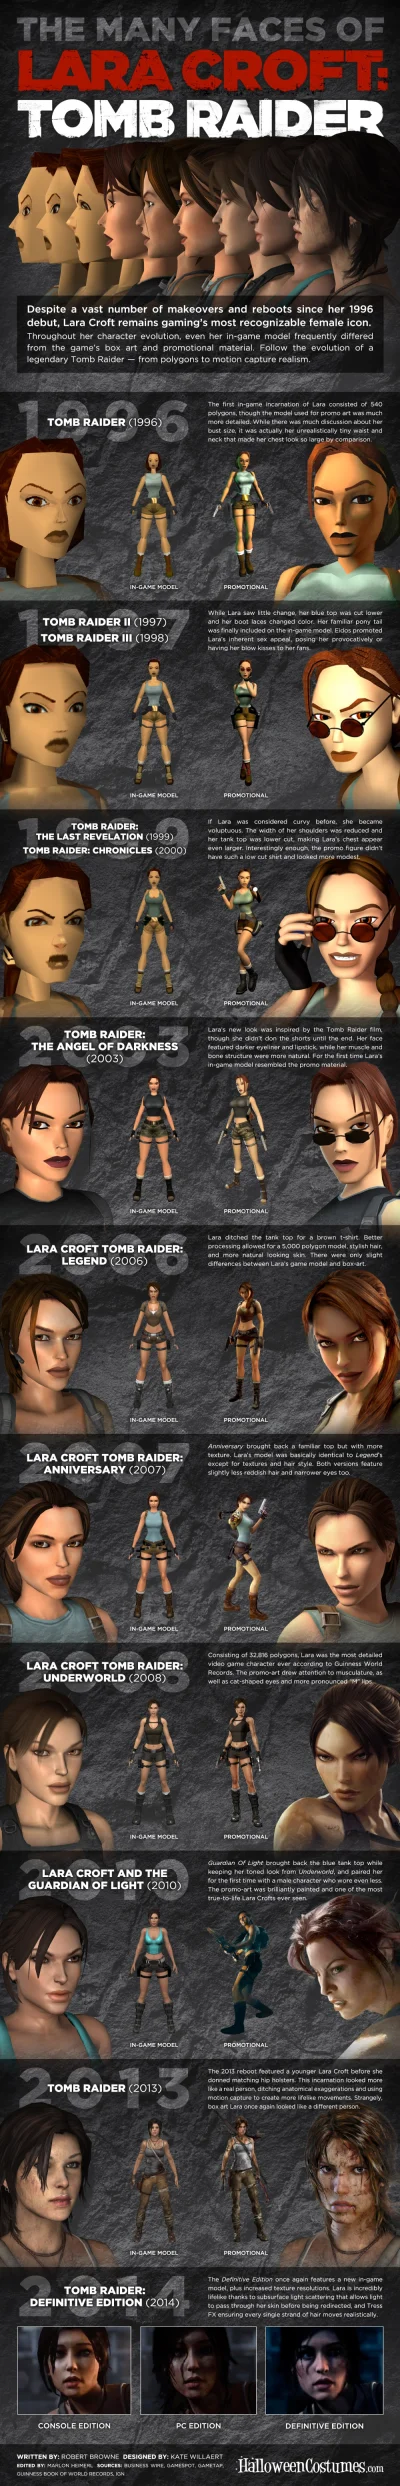 zaltar - Ewolucja Lary Croft na przestrzeni ostatnich lat
#gry #tombraider #bedegral...